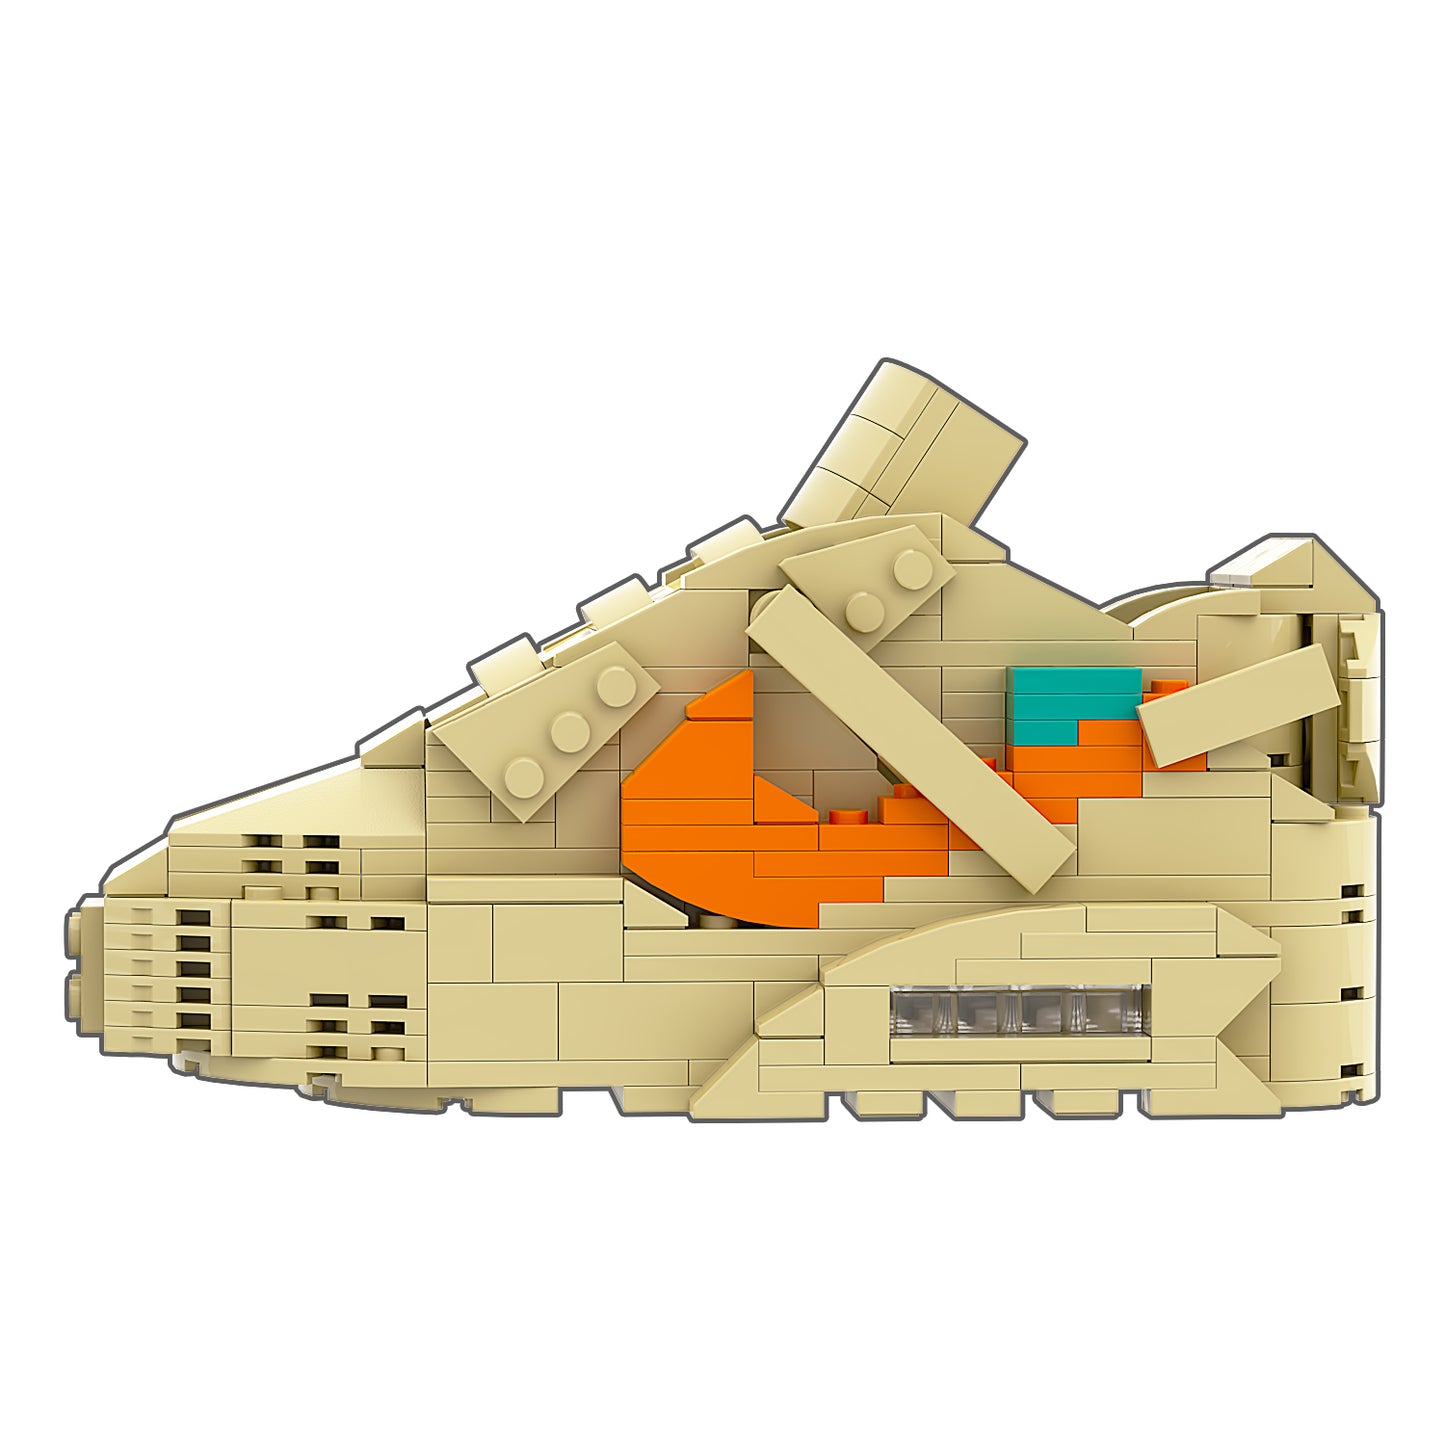 REGULAR Air Max 90 "Desert Ore" Sneaker Bricks with Mini Figure